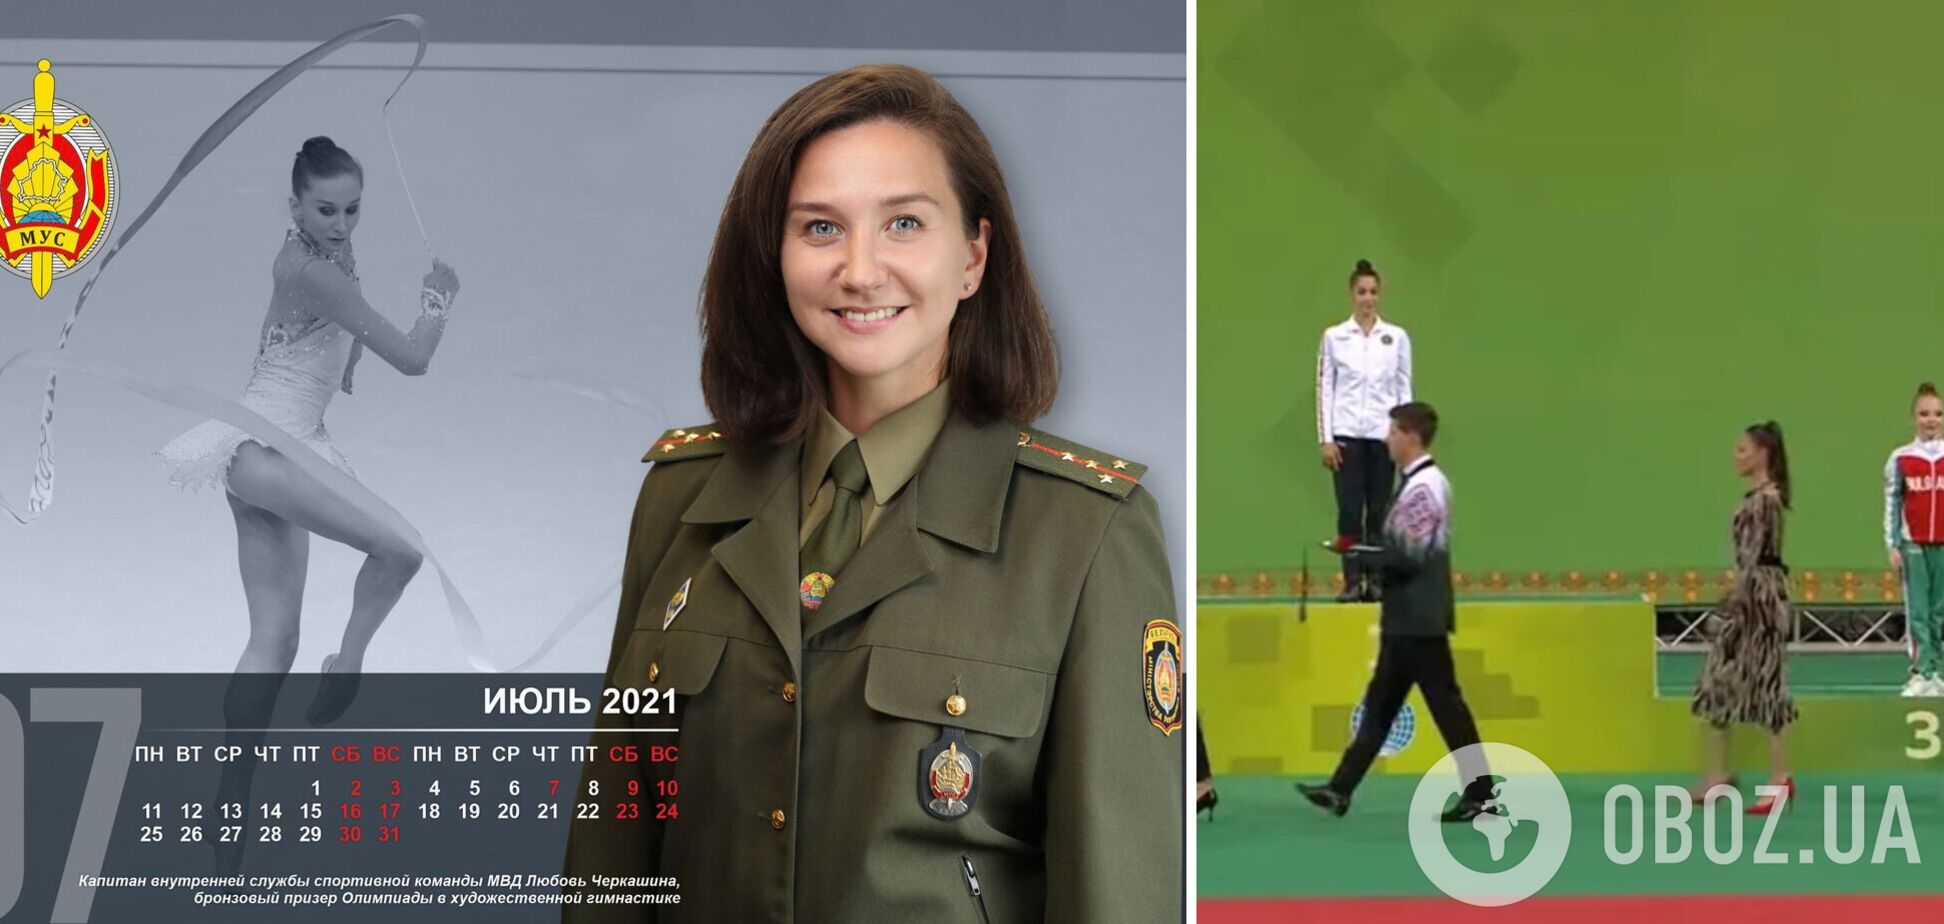 Белорусская чемпионка, фанатеющая от Лукашенко, награждала на ЧМ с участием Украины